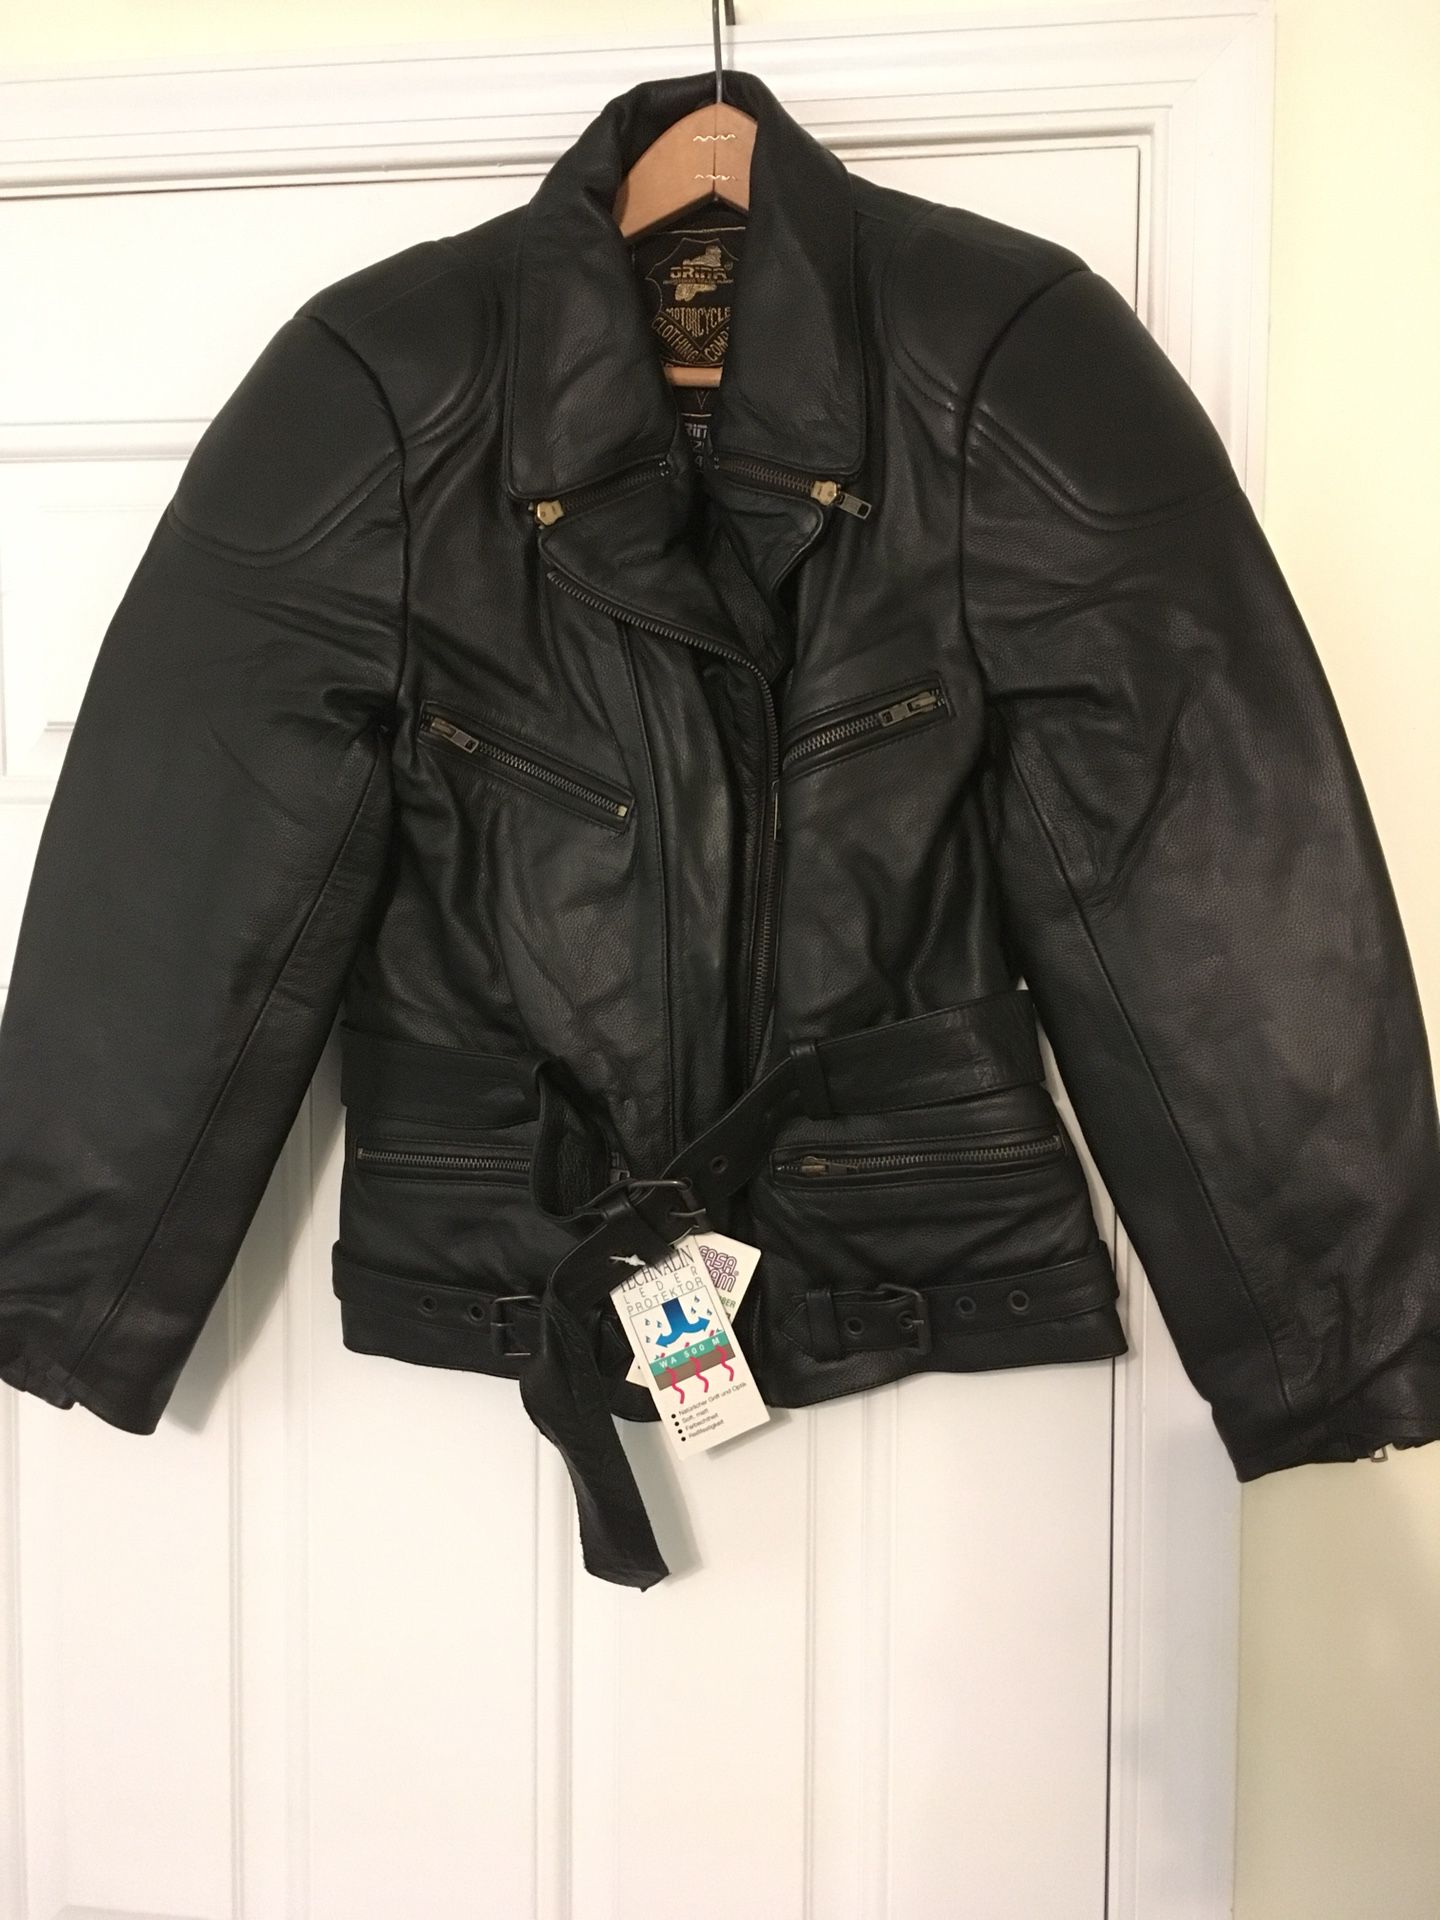 Motorcycle jacket size 44